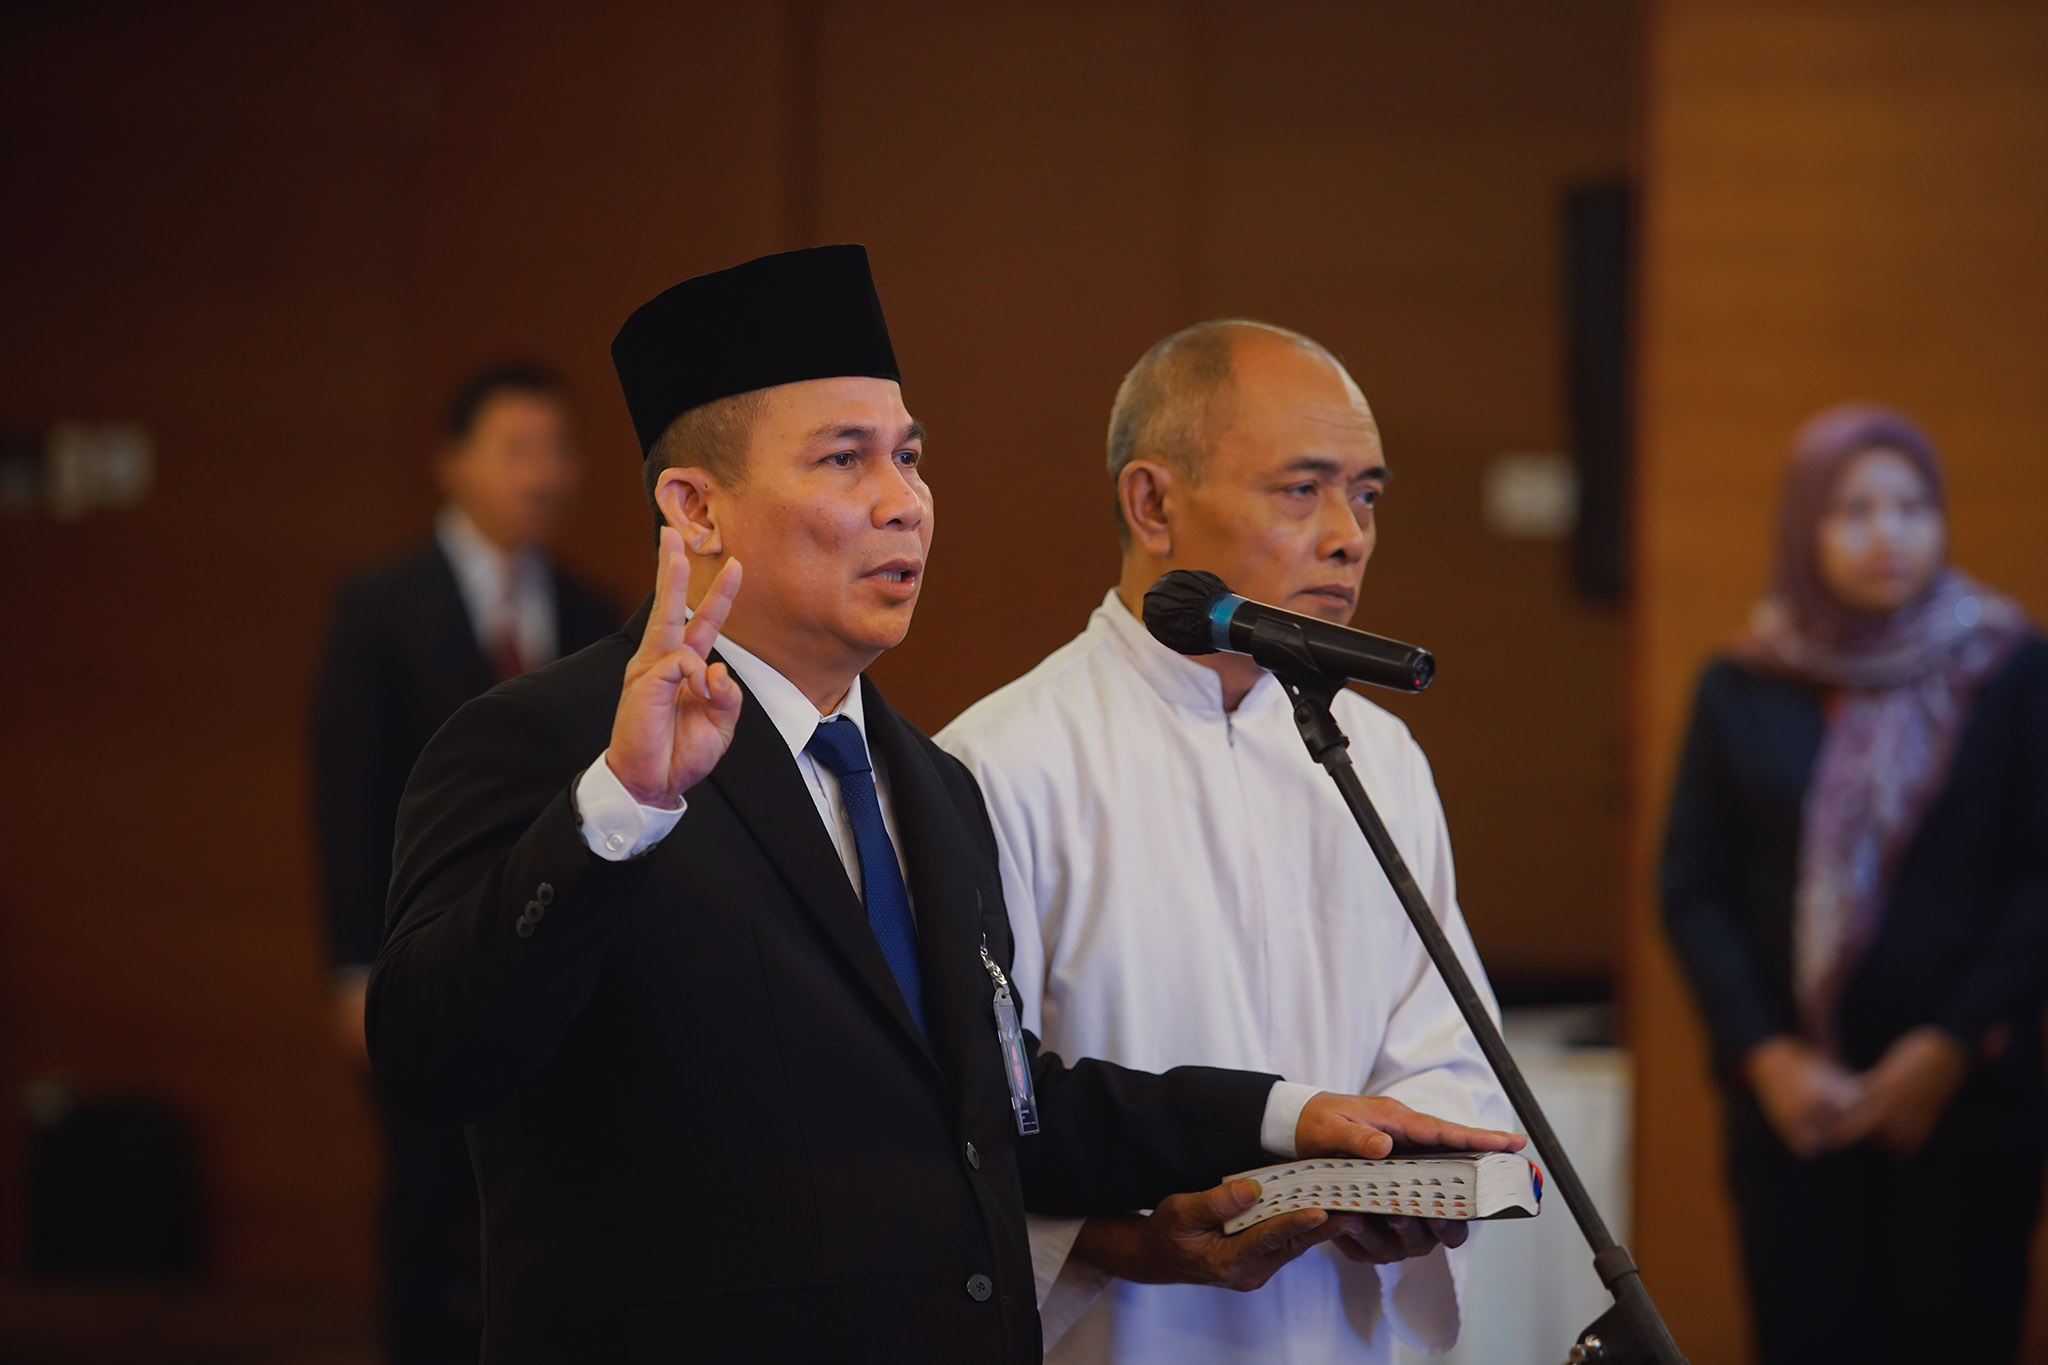 Pejabat Pimpinan Tinggi Madya yang dilantik yaitu Moga Simatupang sebagai Direktur Jenderal Perlindungan Konsumen dan Tertib Niaga.